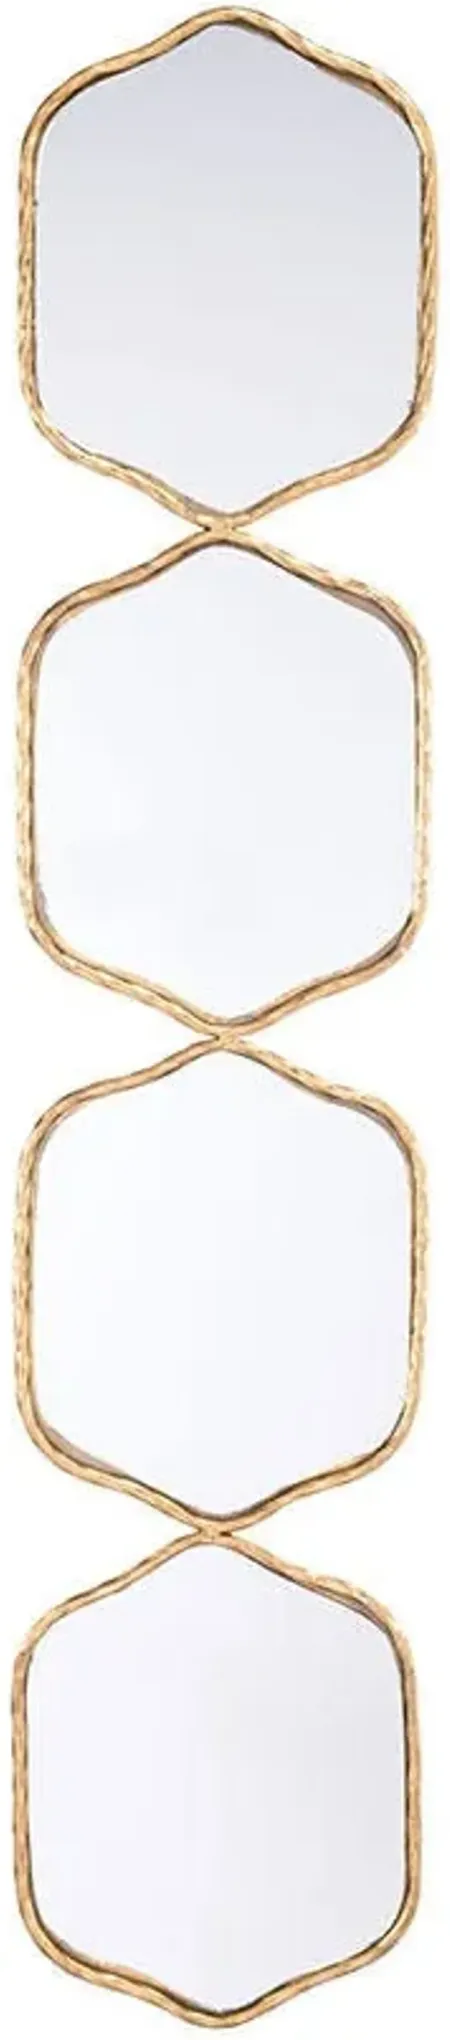 43" X 9" Odette Gold Geometric Wall Mirror